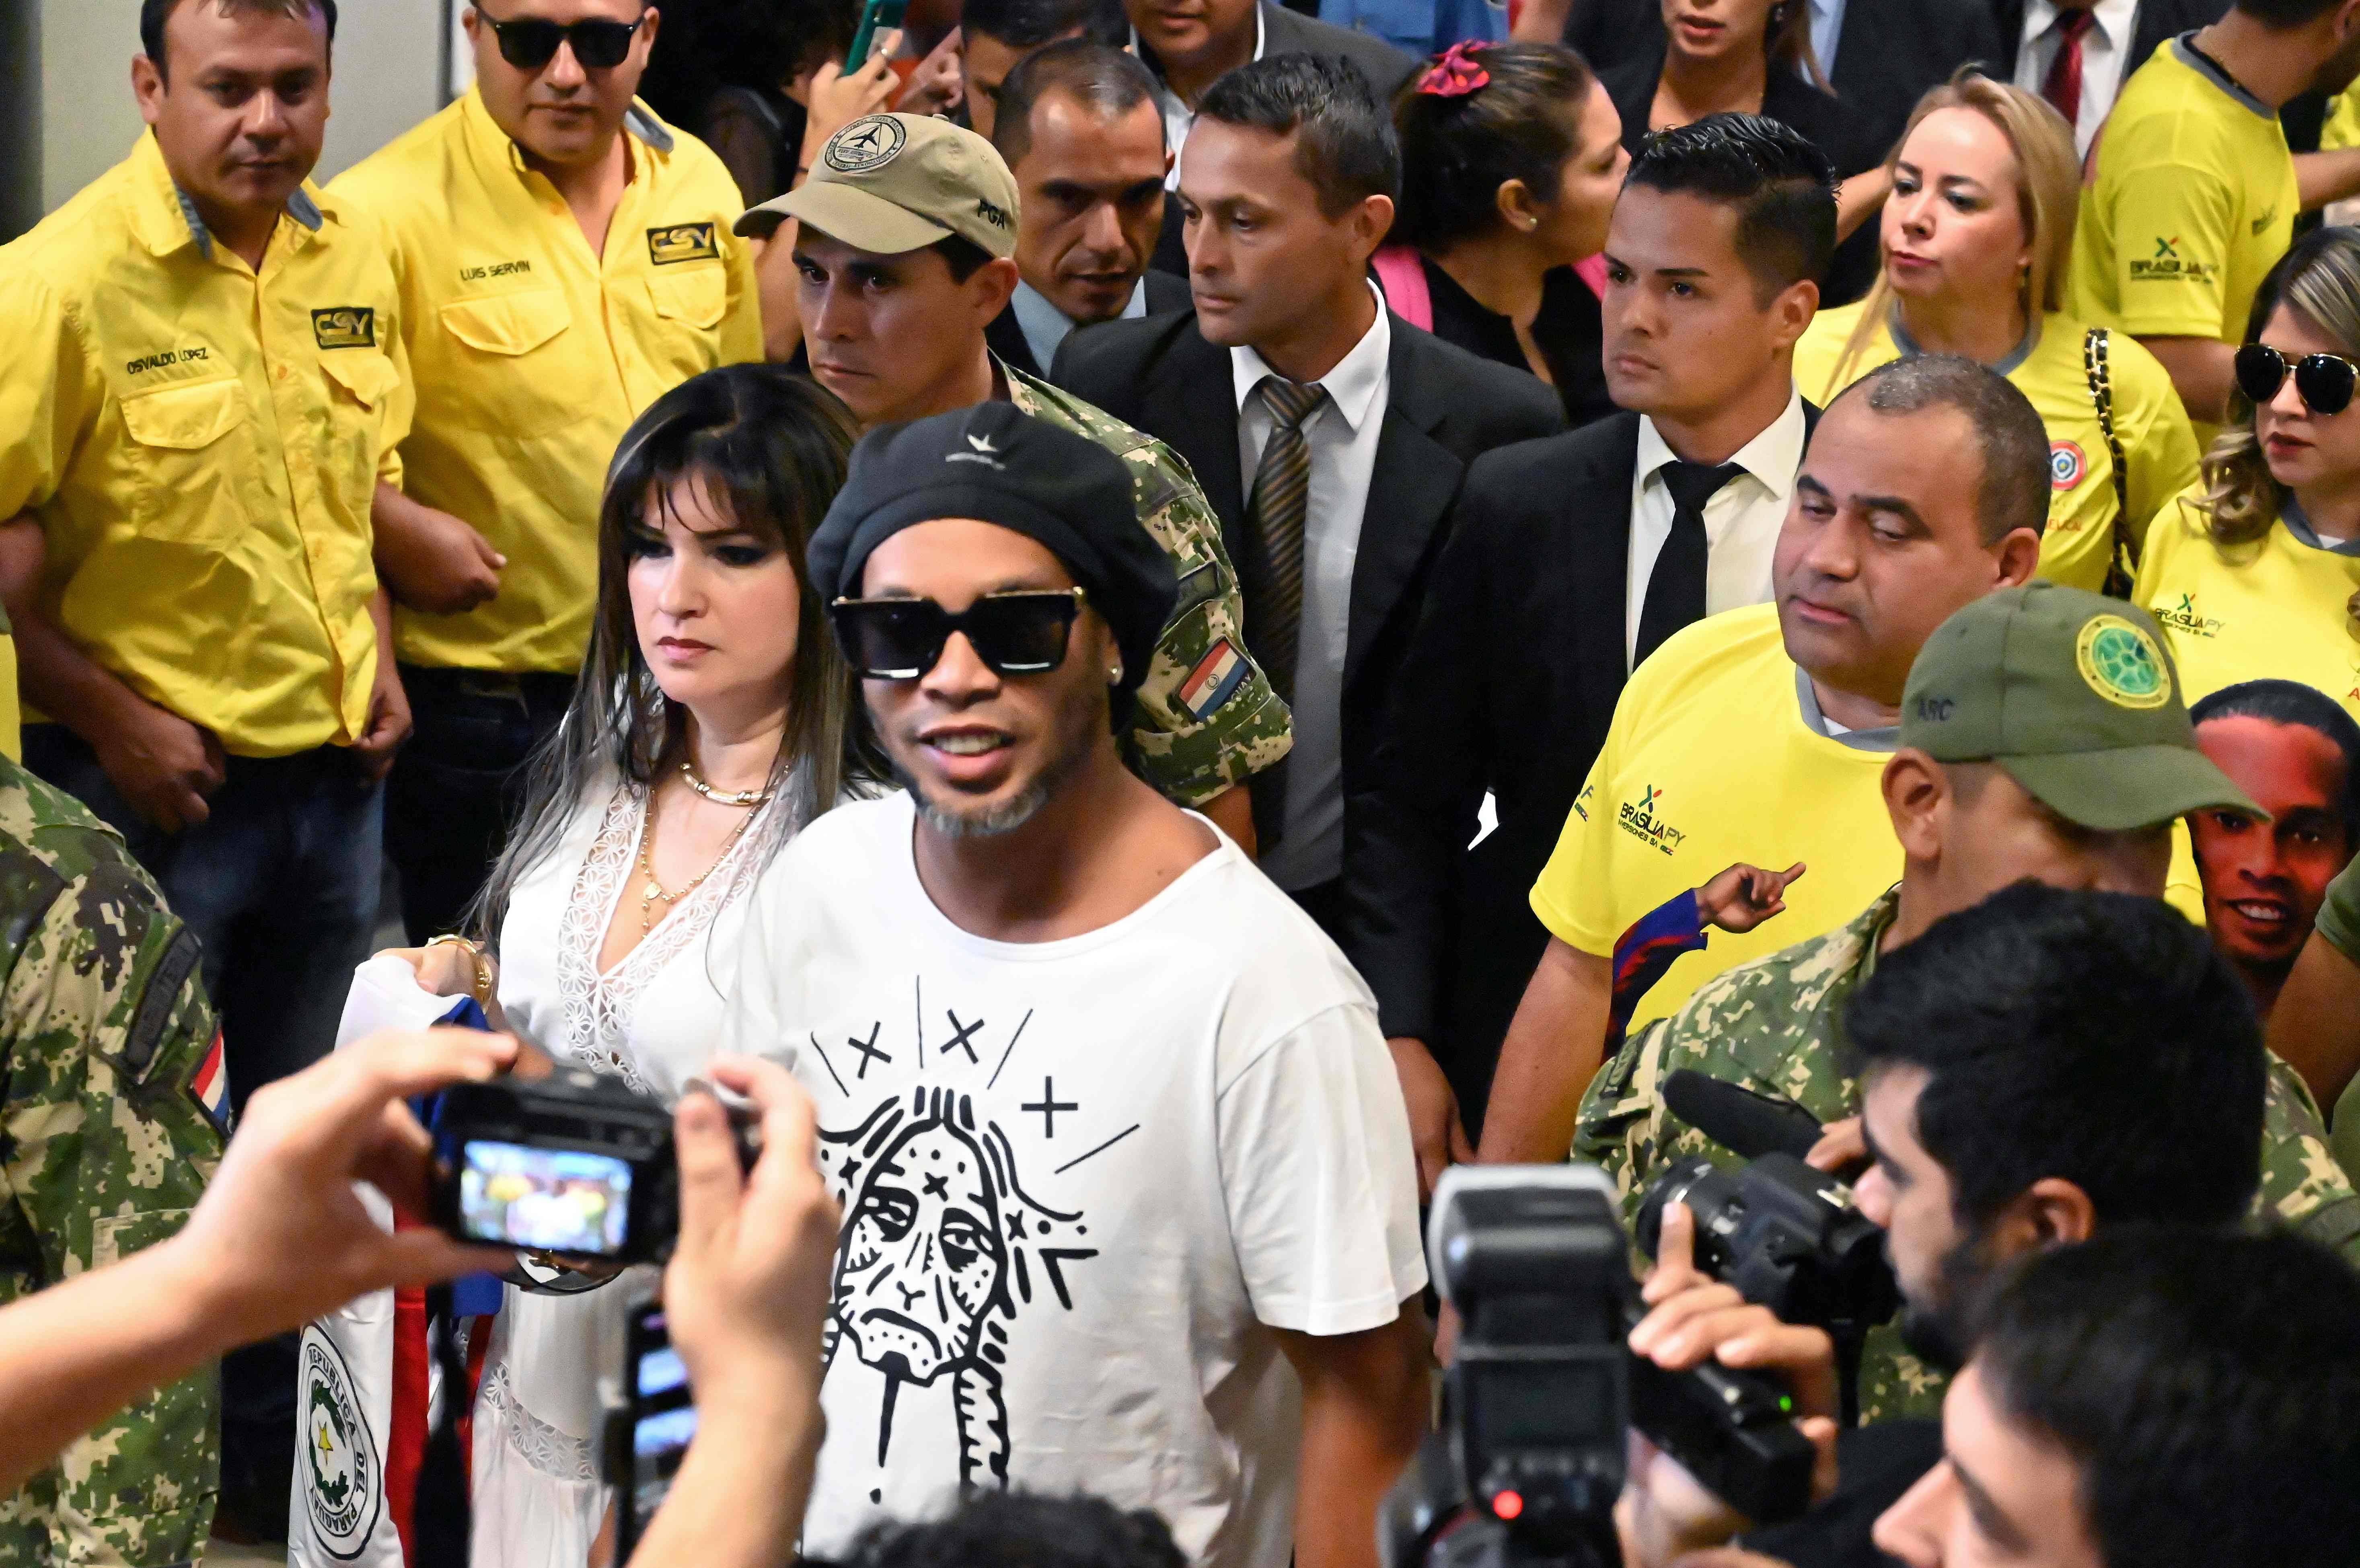 La exestrella del futbol de Brasil Ronaldinho Gaucho enfrenta un proceso judicial por supuesta falsificación de documentos. (Foto Prensa Libre: AFP)